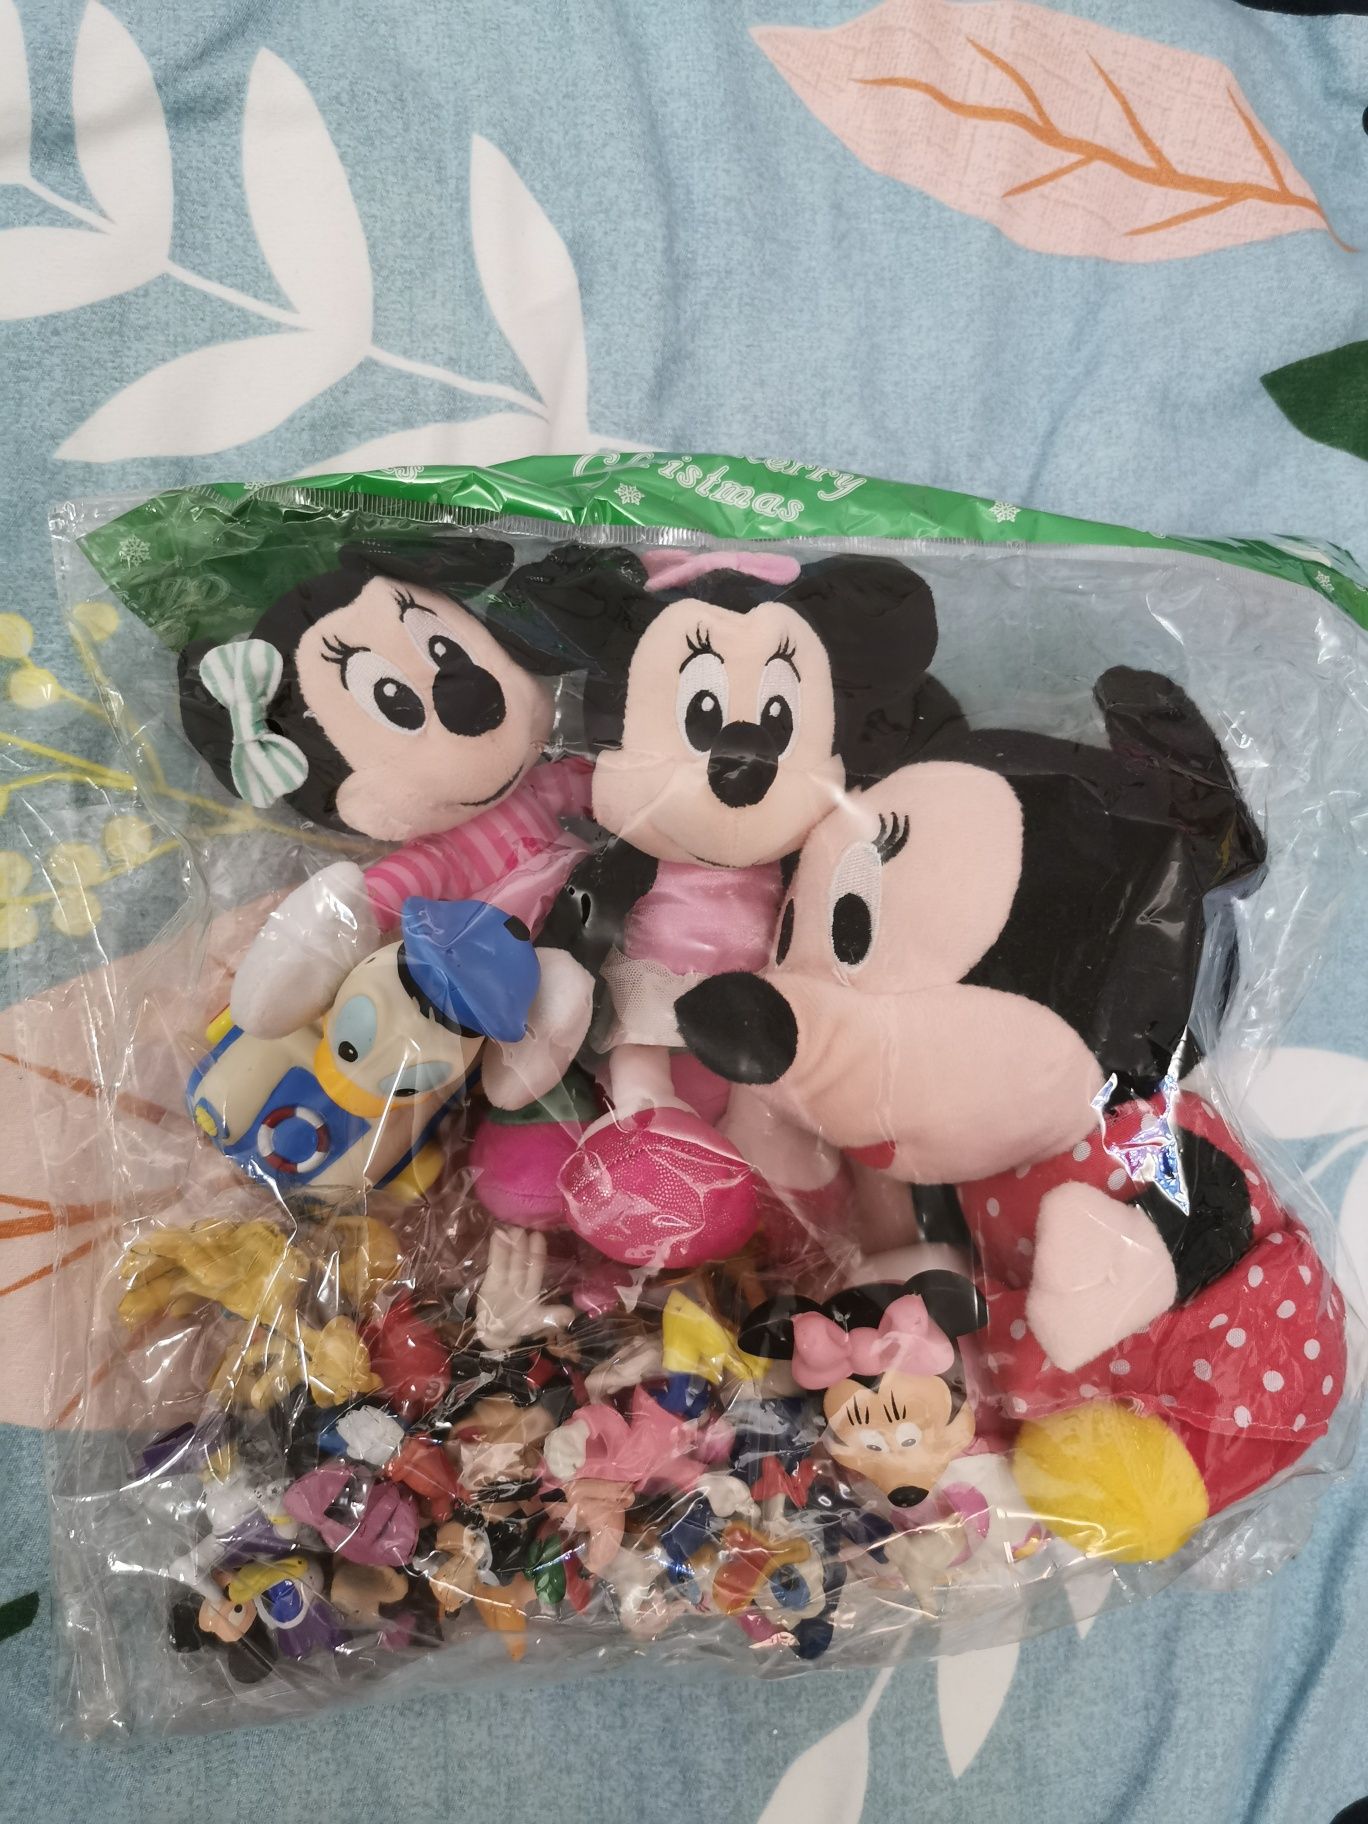 Minnie mouse plusuri, jucării din plastic masinute